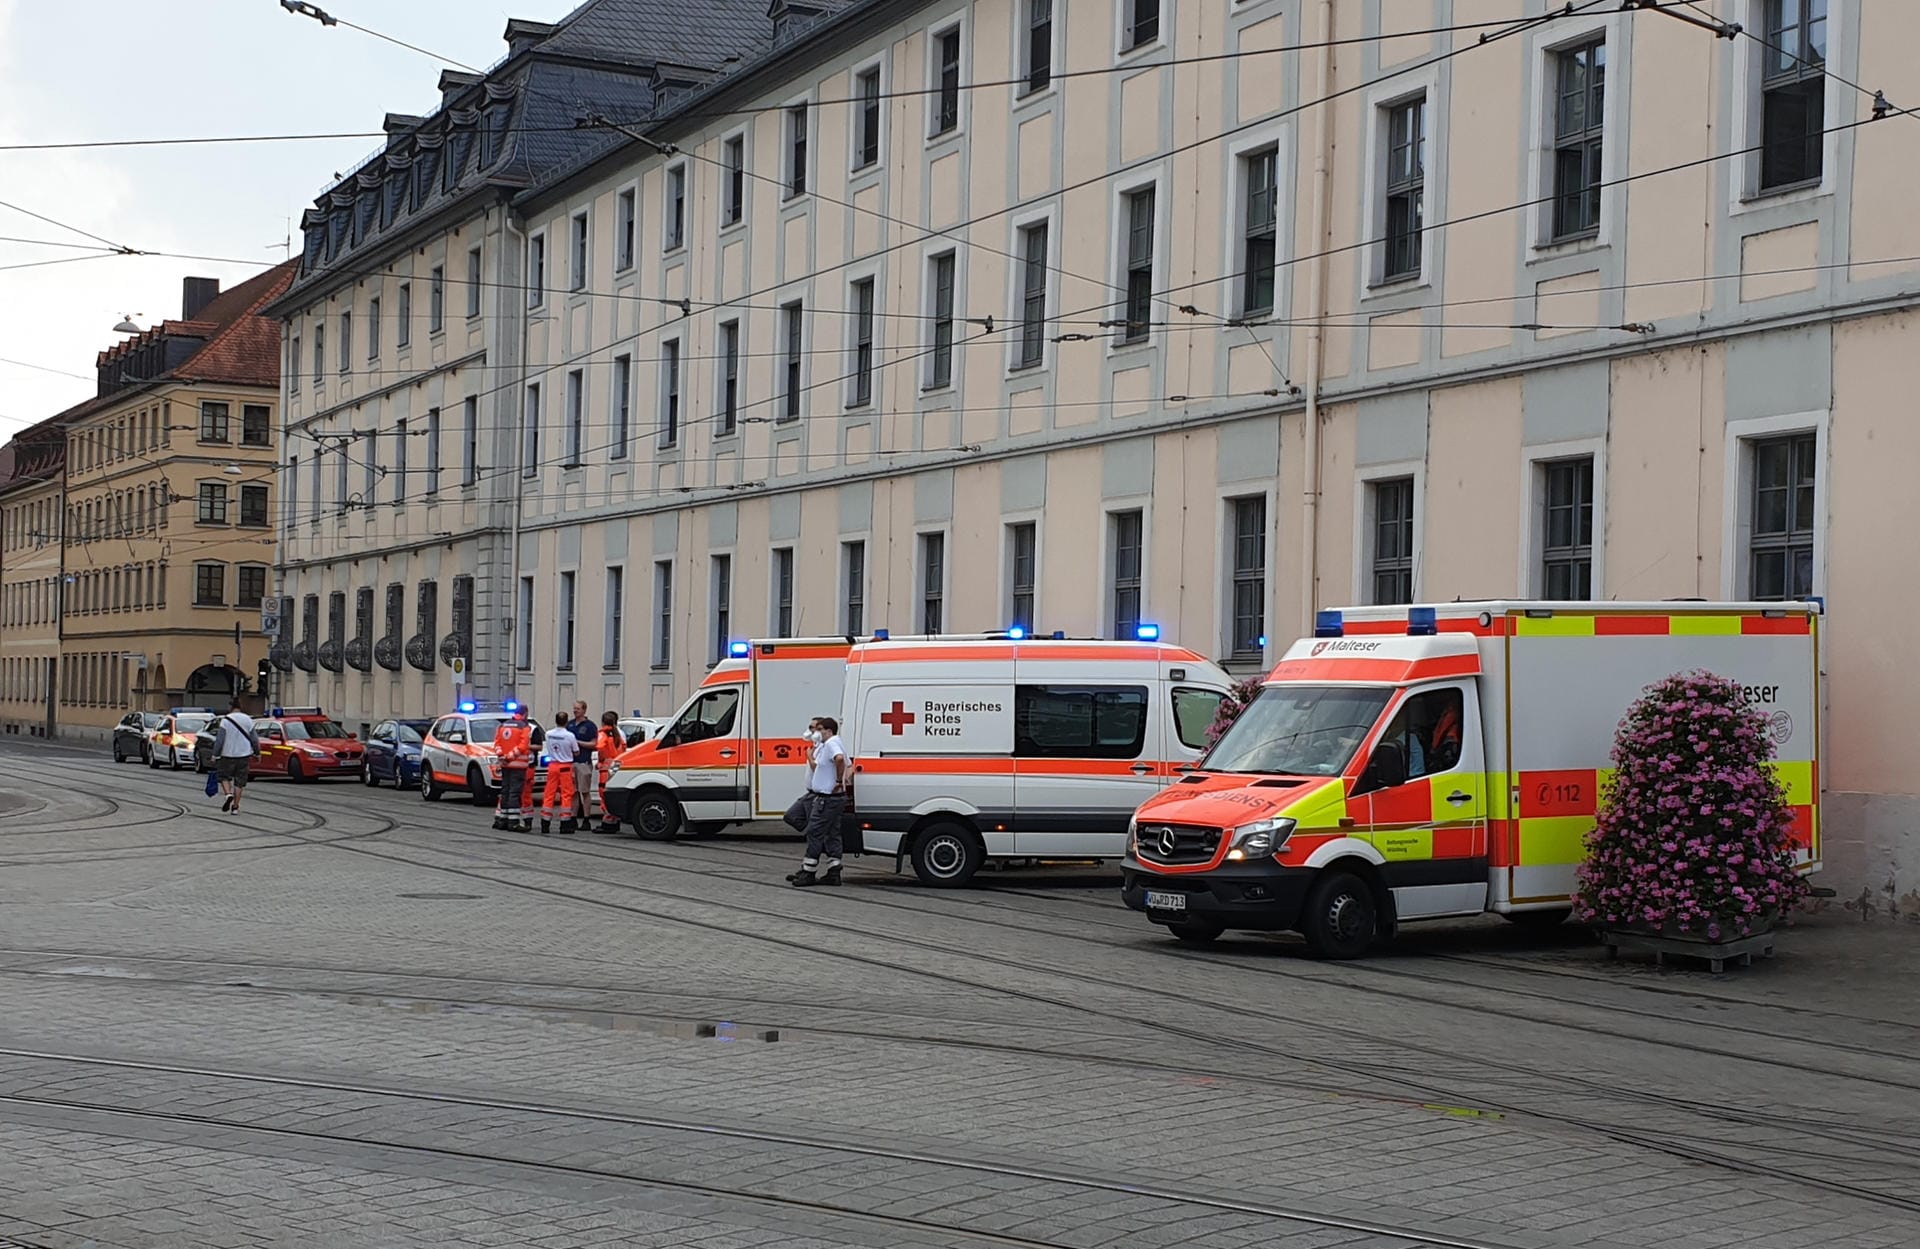 Messerattacke in Würzburg: Für mehrere Menschen kam jede Hilfe zu spät.